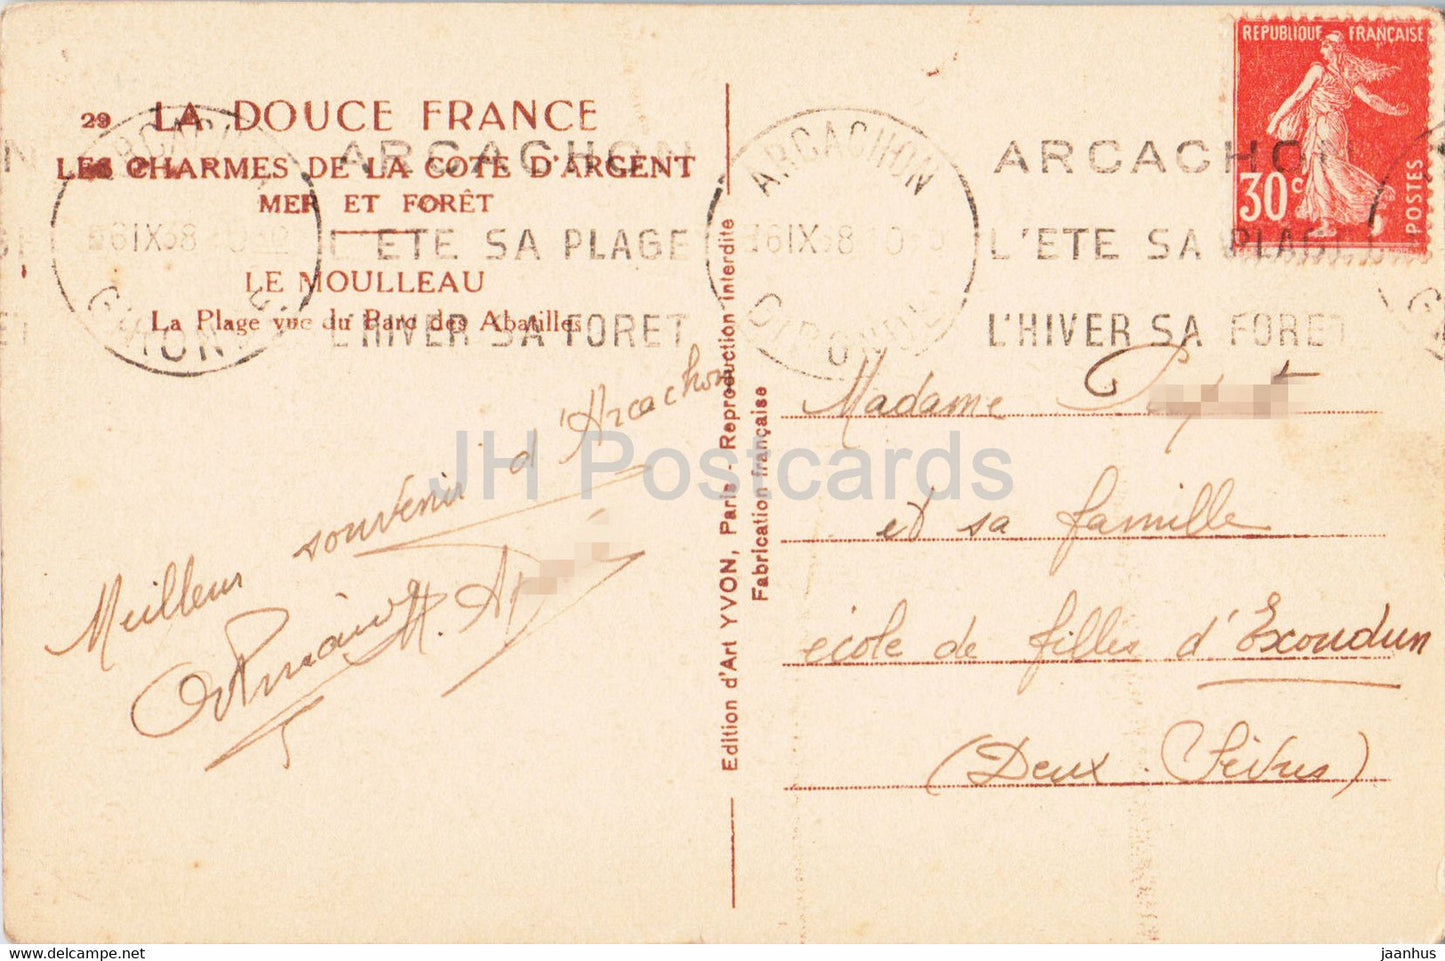 Le Moulleau - La Plage vue du Parc des Abatilles - carte postale ancienne - 1938 - France - occasion